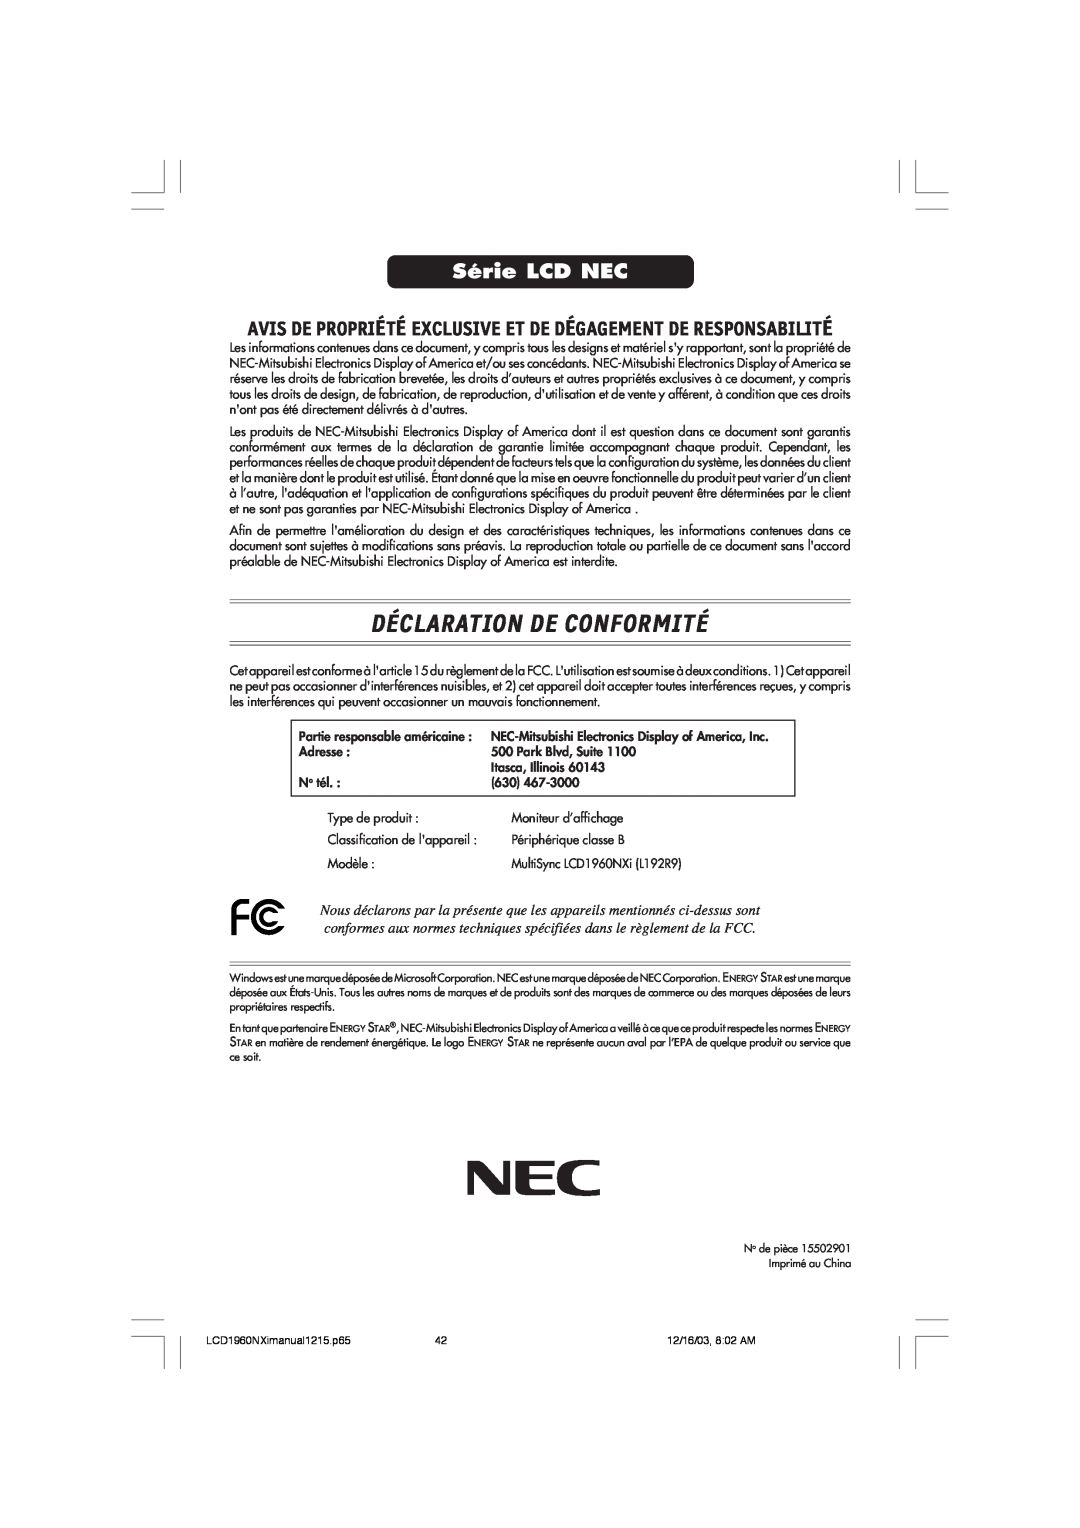 NEC LCD1960NXI Déclaration De Conformité, Série LCD NEC, Avis De Propriété Exclusive Et De Dégagement De Responsabilité 